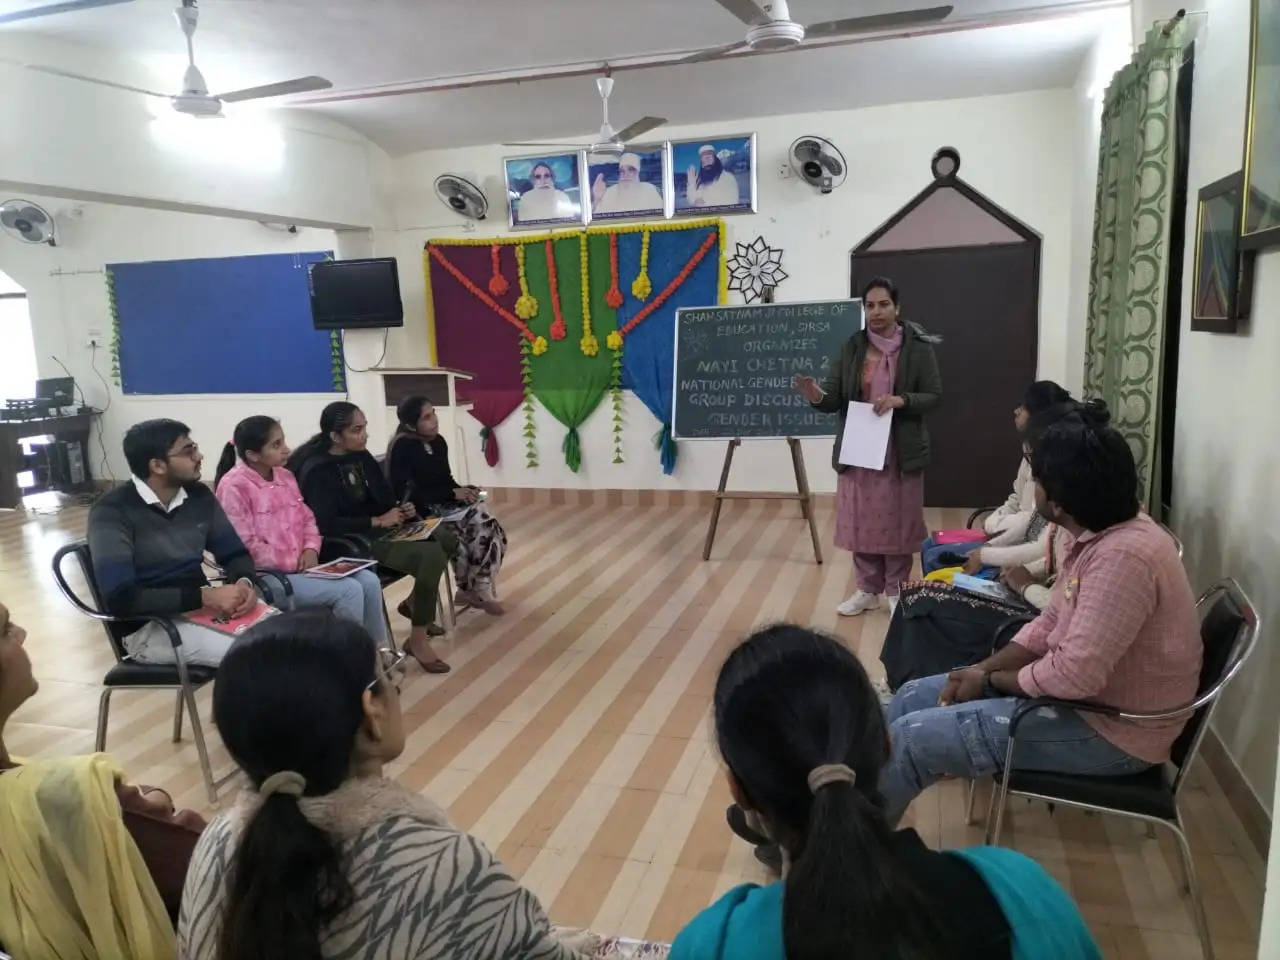 शाह सतनाम जी कॉलेज ऑफ एजुकेशन में लैंगिक मुद्दे पर सामूहिक परिचर्चा का आयोजन